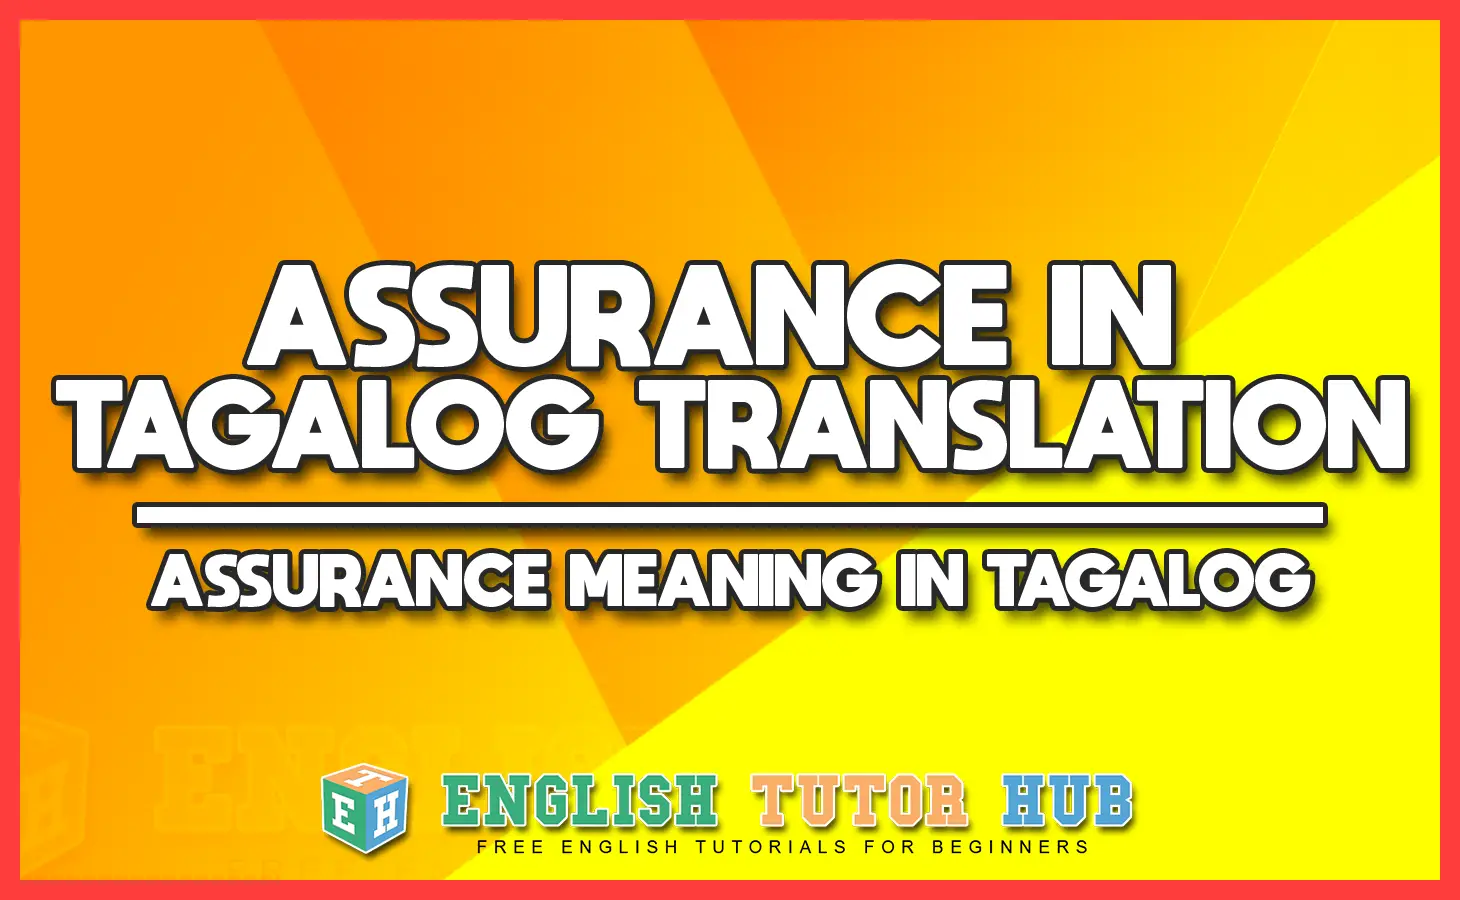 ASSURANCE IN TAGALOG TRANSLATION